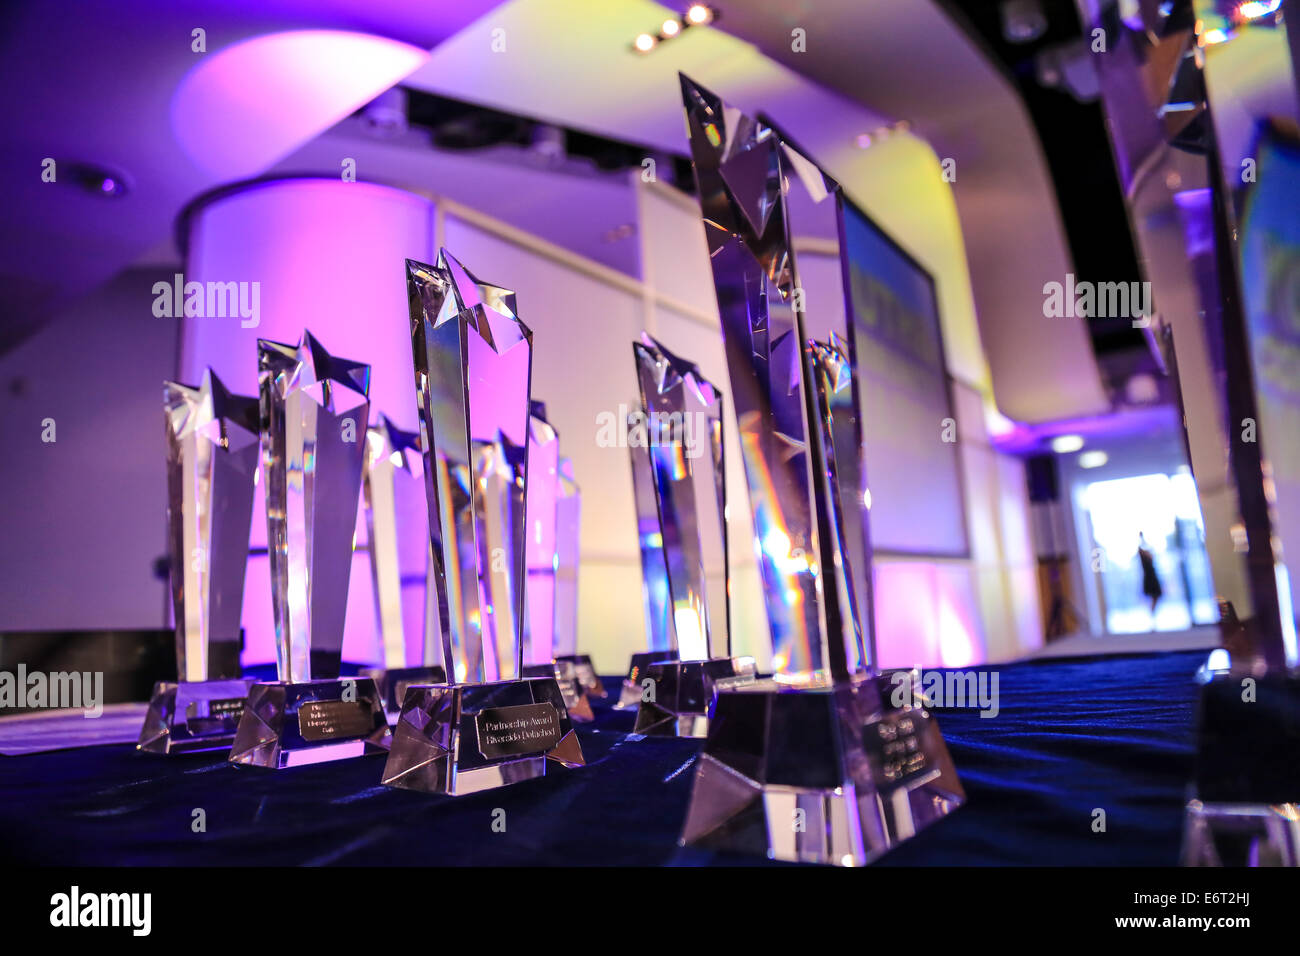 Premi di vetro/Trophy schierate prima della gioventù e cultura la premiazione a Liverpool con illuminazione colorata da dietro. Foto Stock